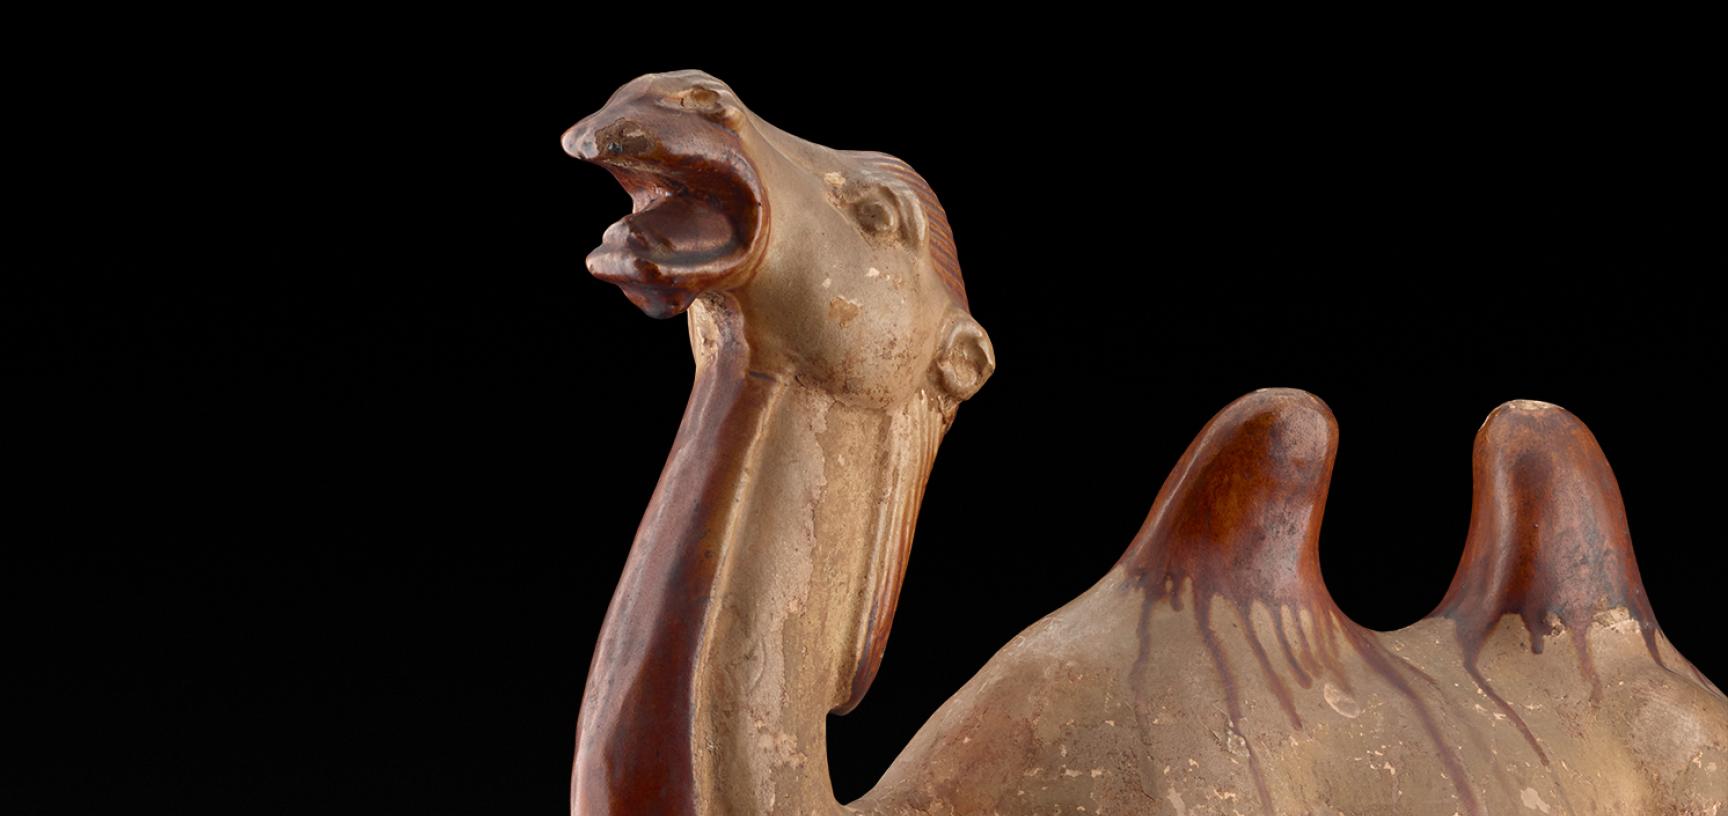 Camel, Tang Dynasty 